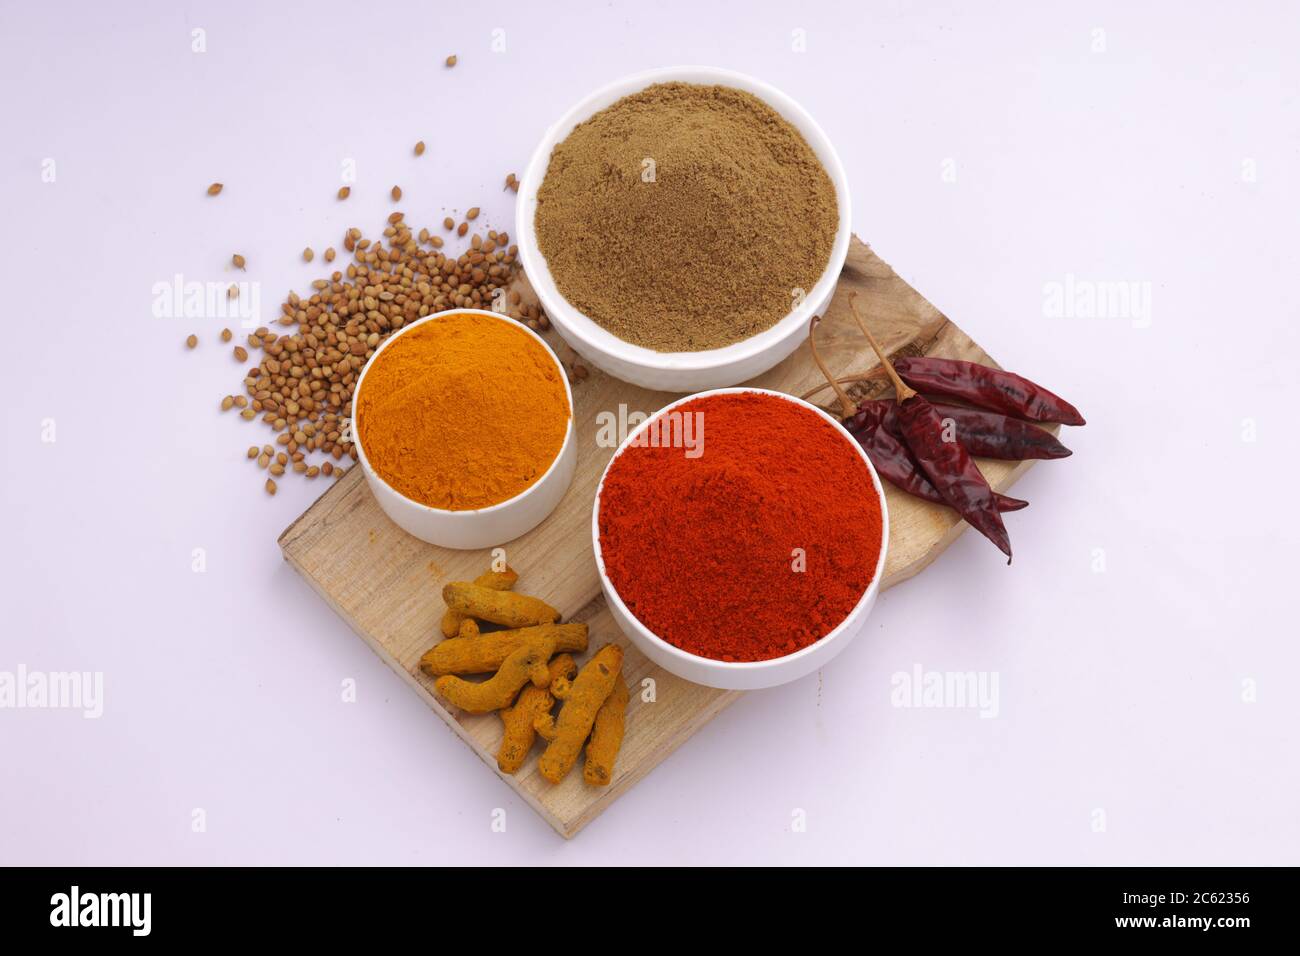 Vue de dessus des épices indiennes Chili, Turmeric et Coriander sont les trois épices de base utilisées pour le curry indien ou les plats, disposés dans des bols blancs Banque D'Images